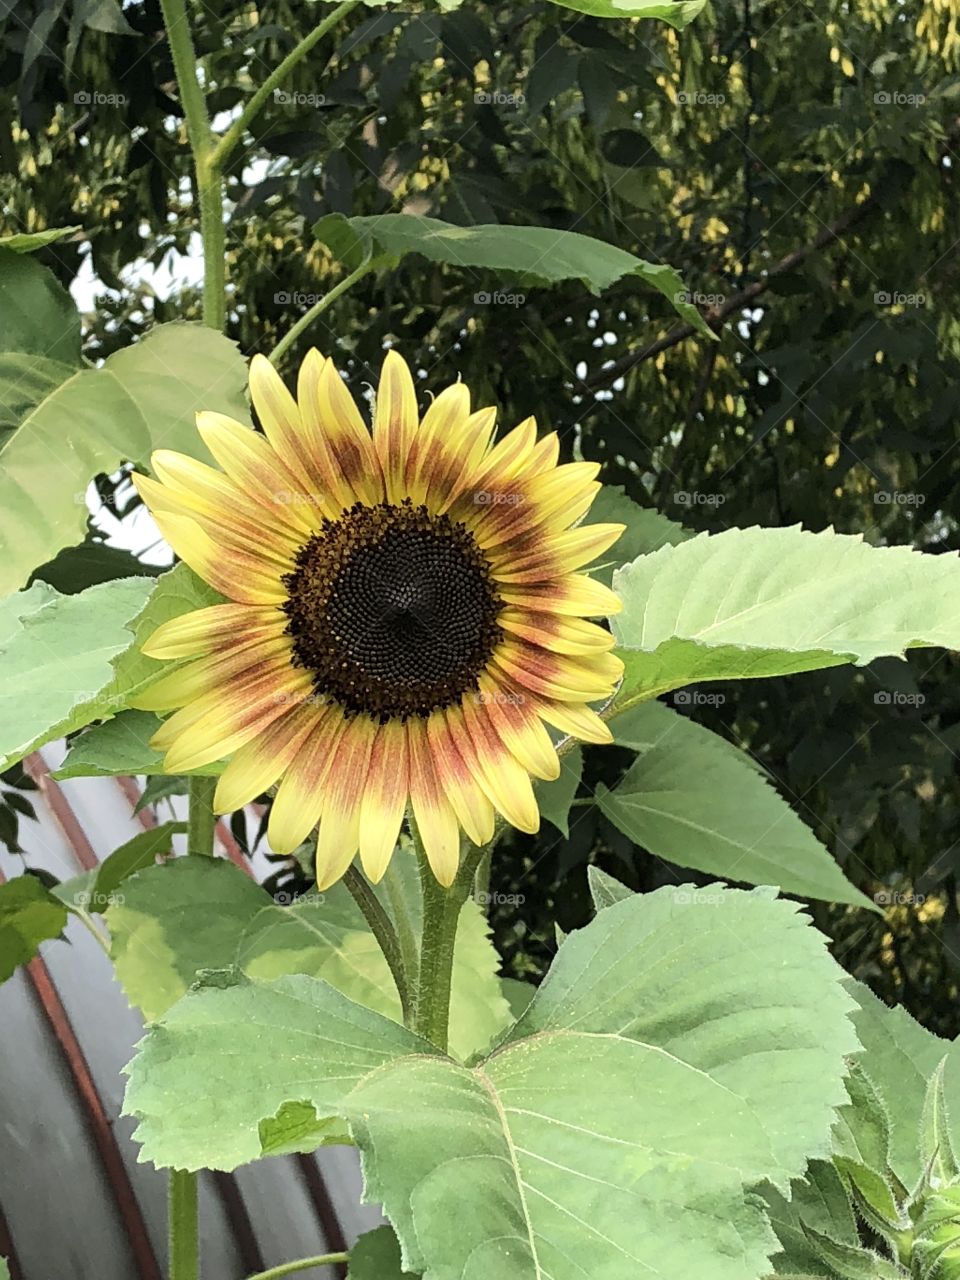 Autumn sunflower in the sun!